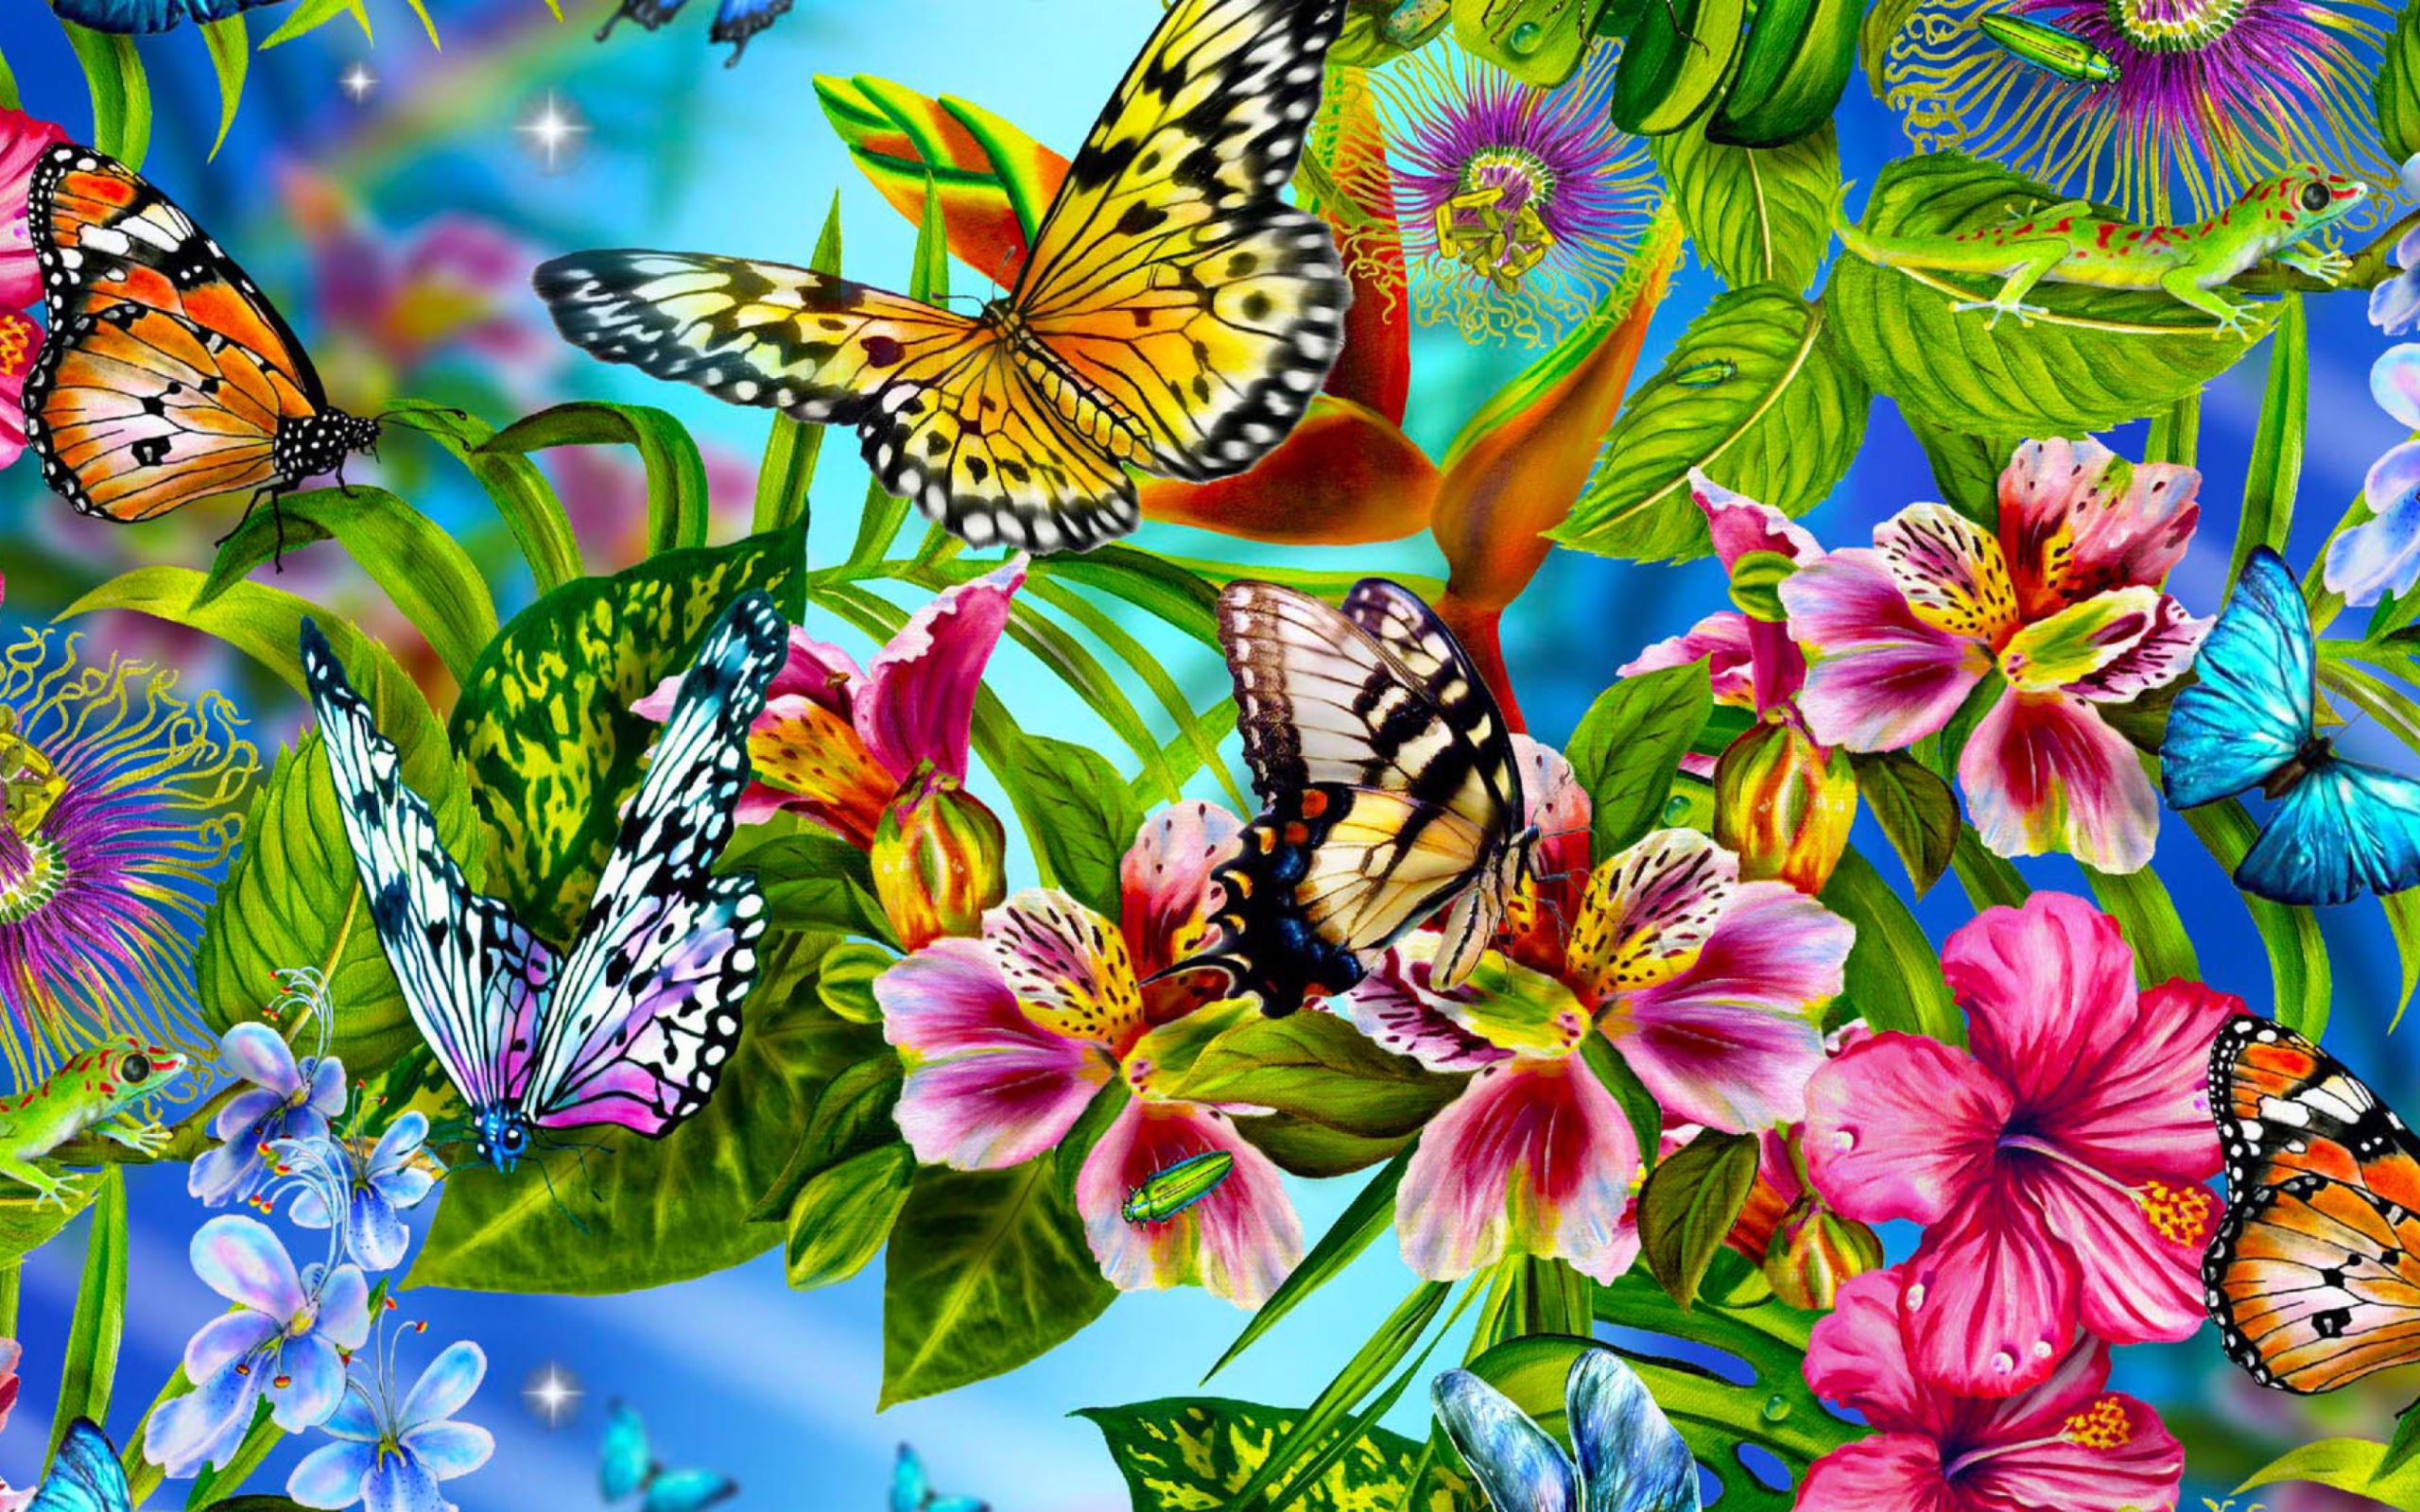 Обложка на экран телефона. Бабочка на цветке. Заставка бабочки. Яркие цветы и бабочки. Красивые бабочки на цветах.